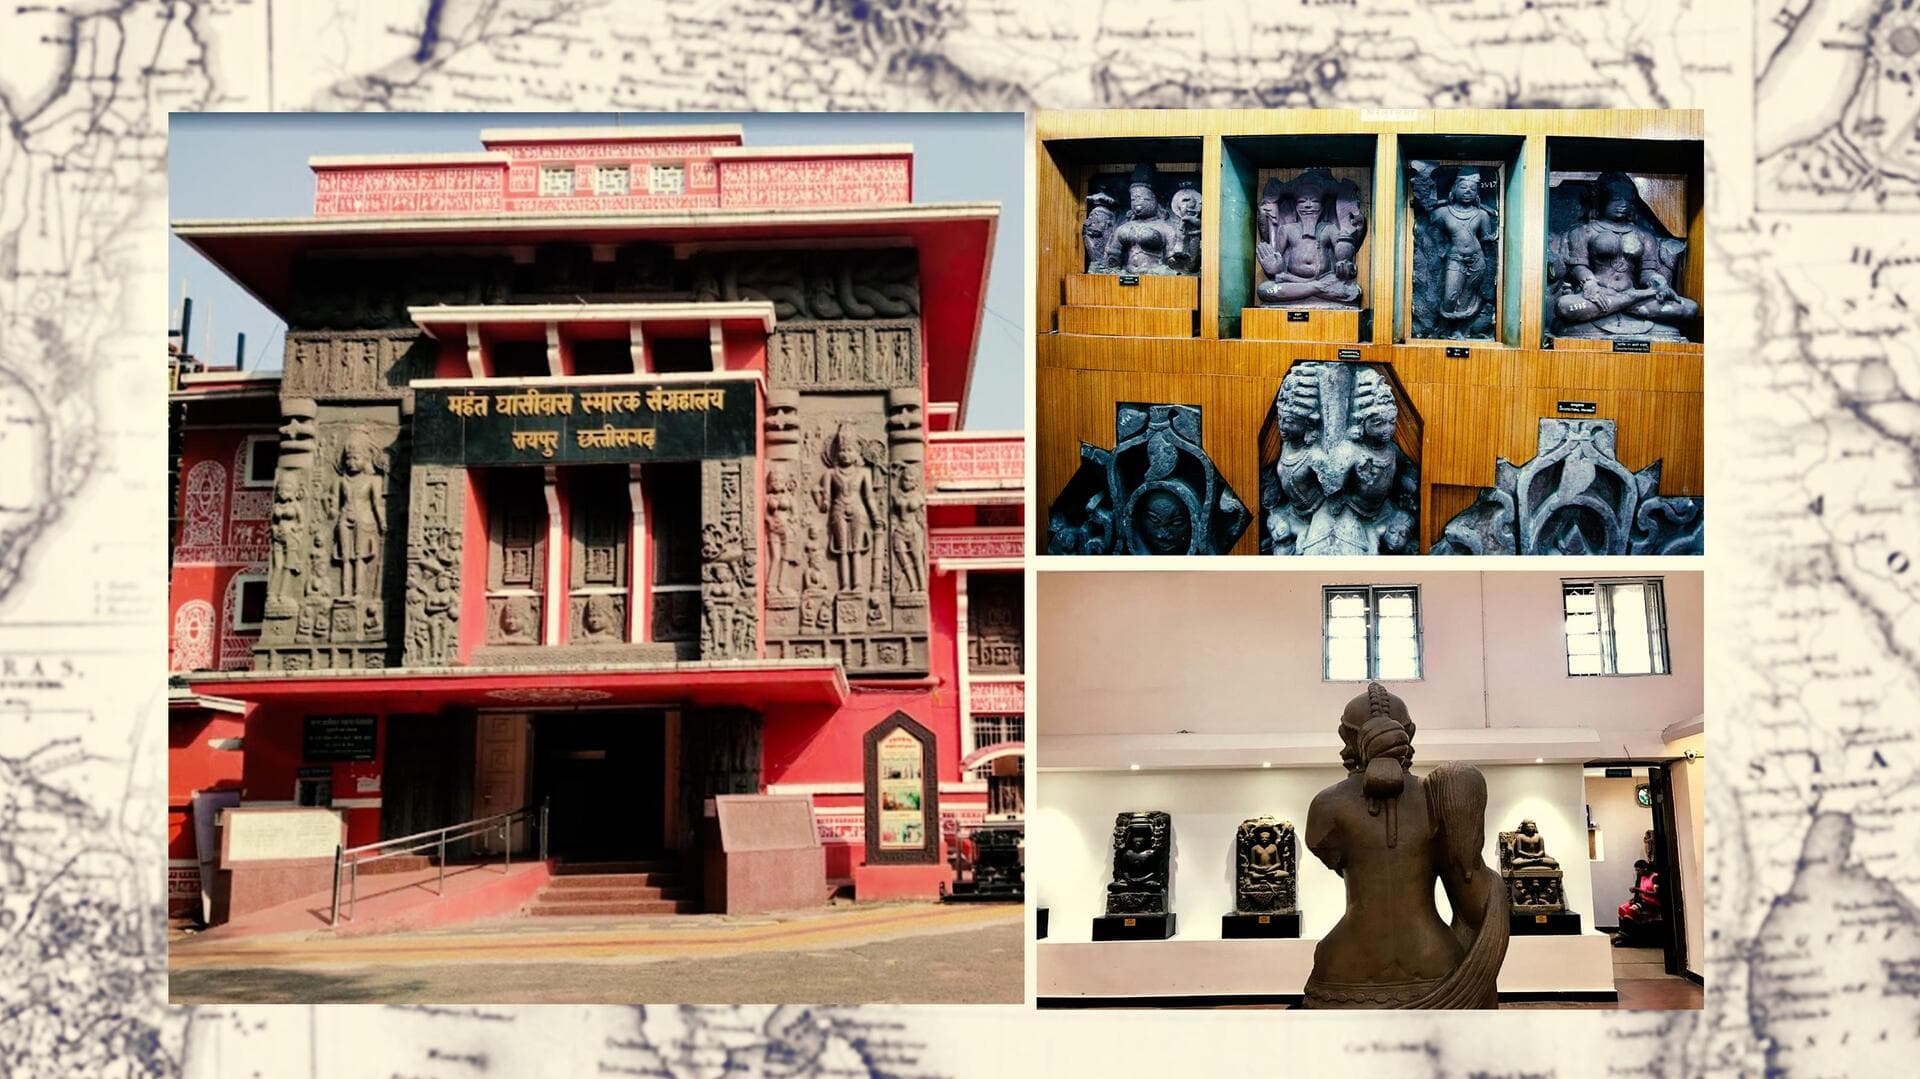 छत्तीसगढ़ की राजधानी रायपुर में हैं कई मशहूर पर्यटन स्थल, एक बार जरूर करें इनका रुख